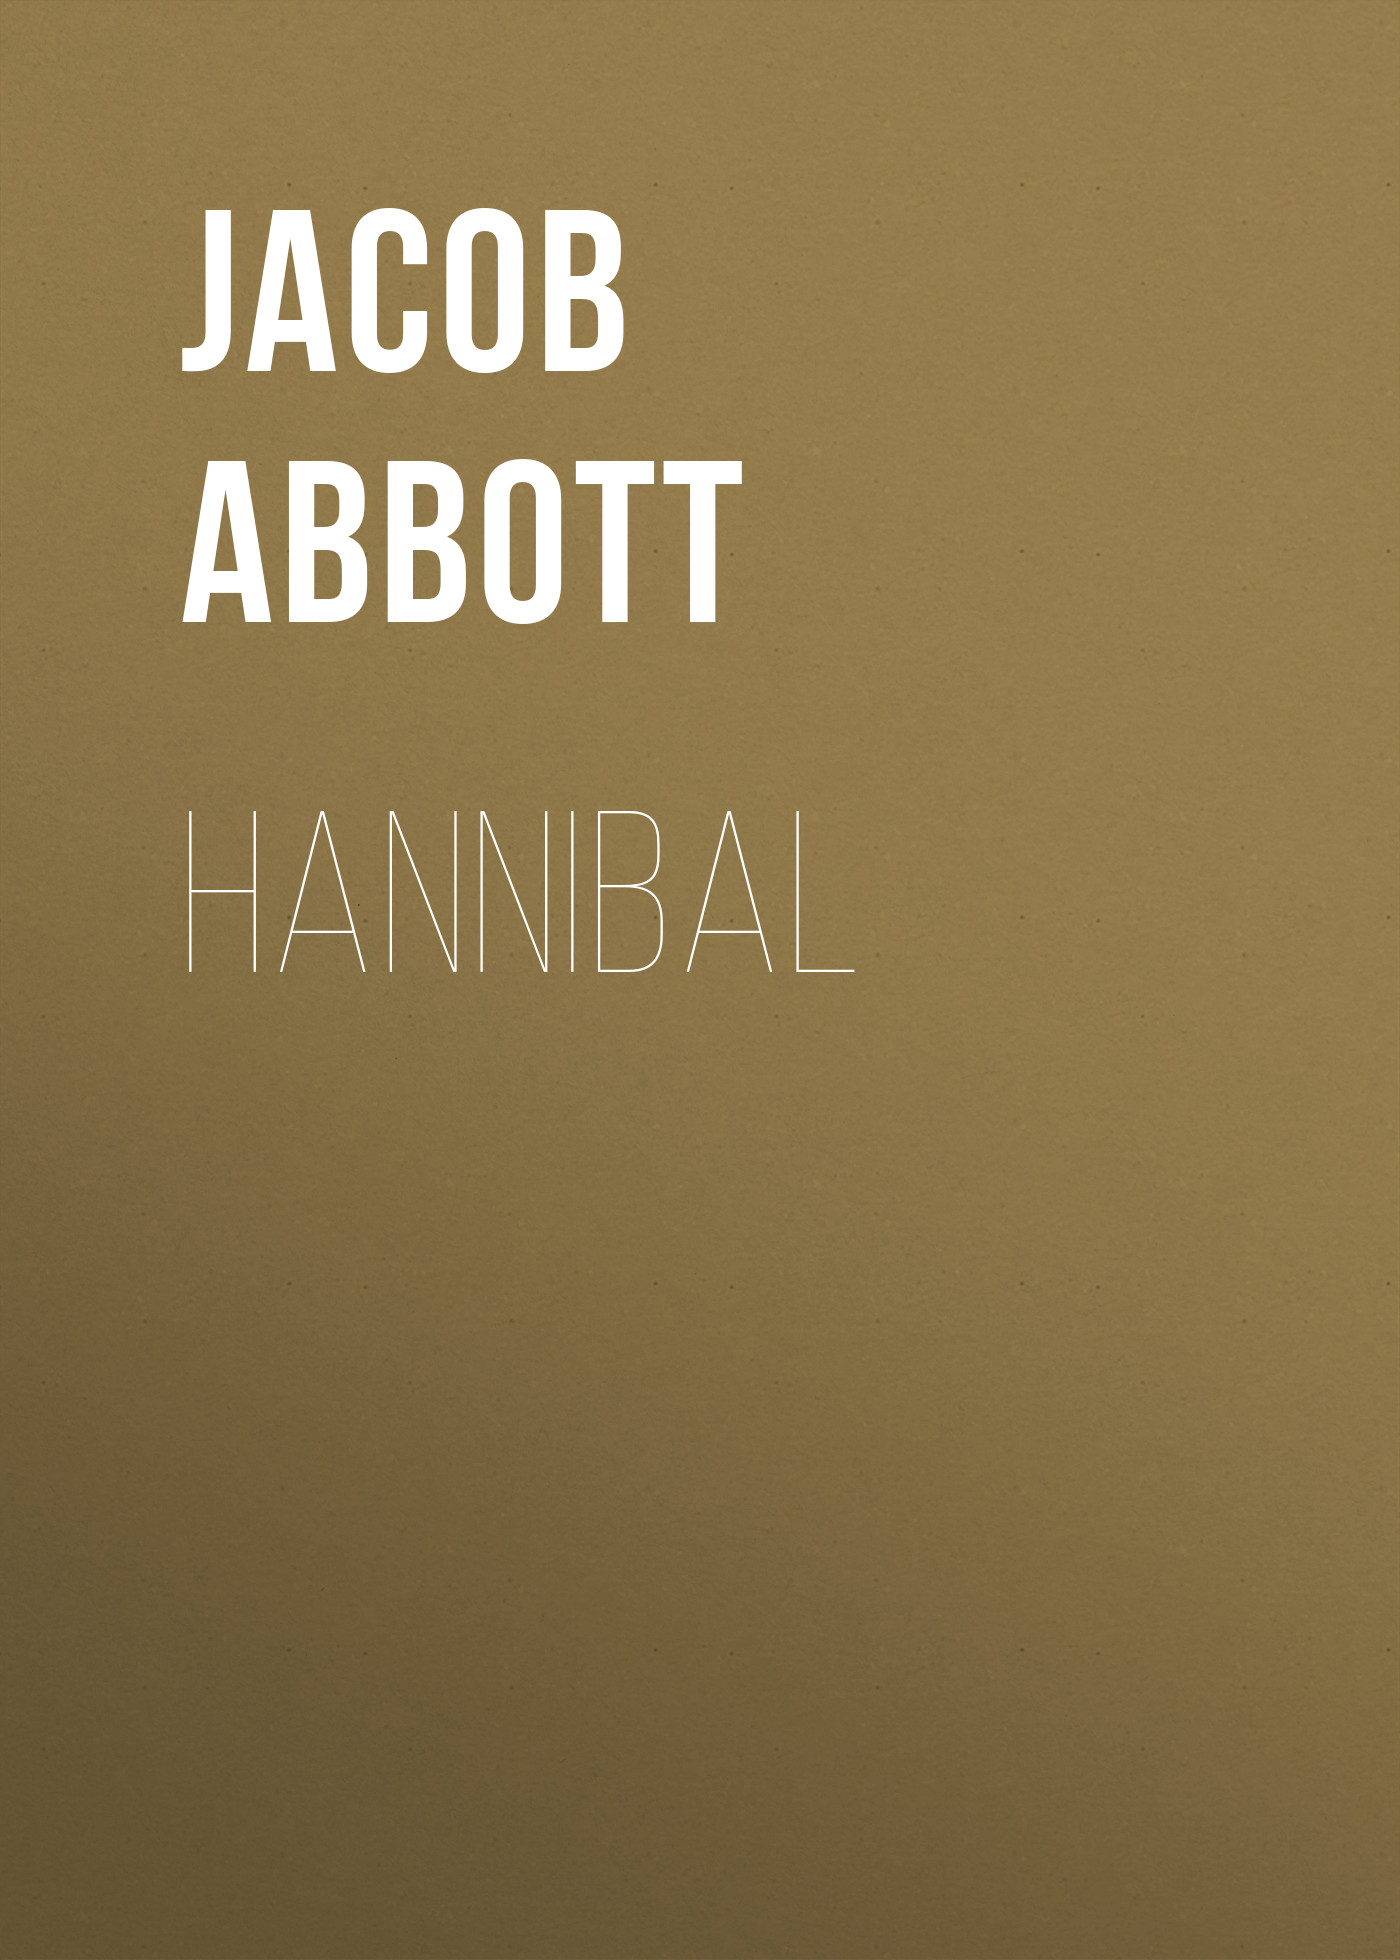 Книга Hannibal из серии , созданная Jacob Abbott, может относится к жанру Зарубежная старинная литература, Зарубежная классика, Историческая литература. Стоимость электронной книги Hannibal с идентификатором 24174196 составляет 0 руб.